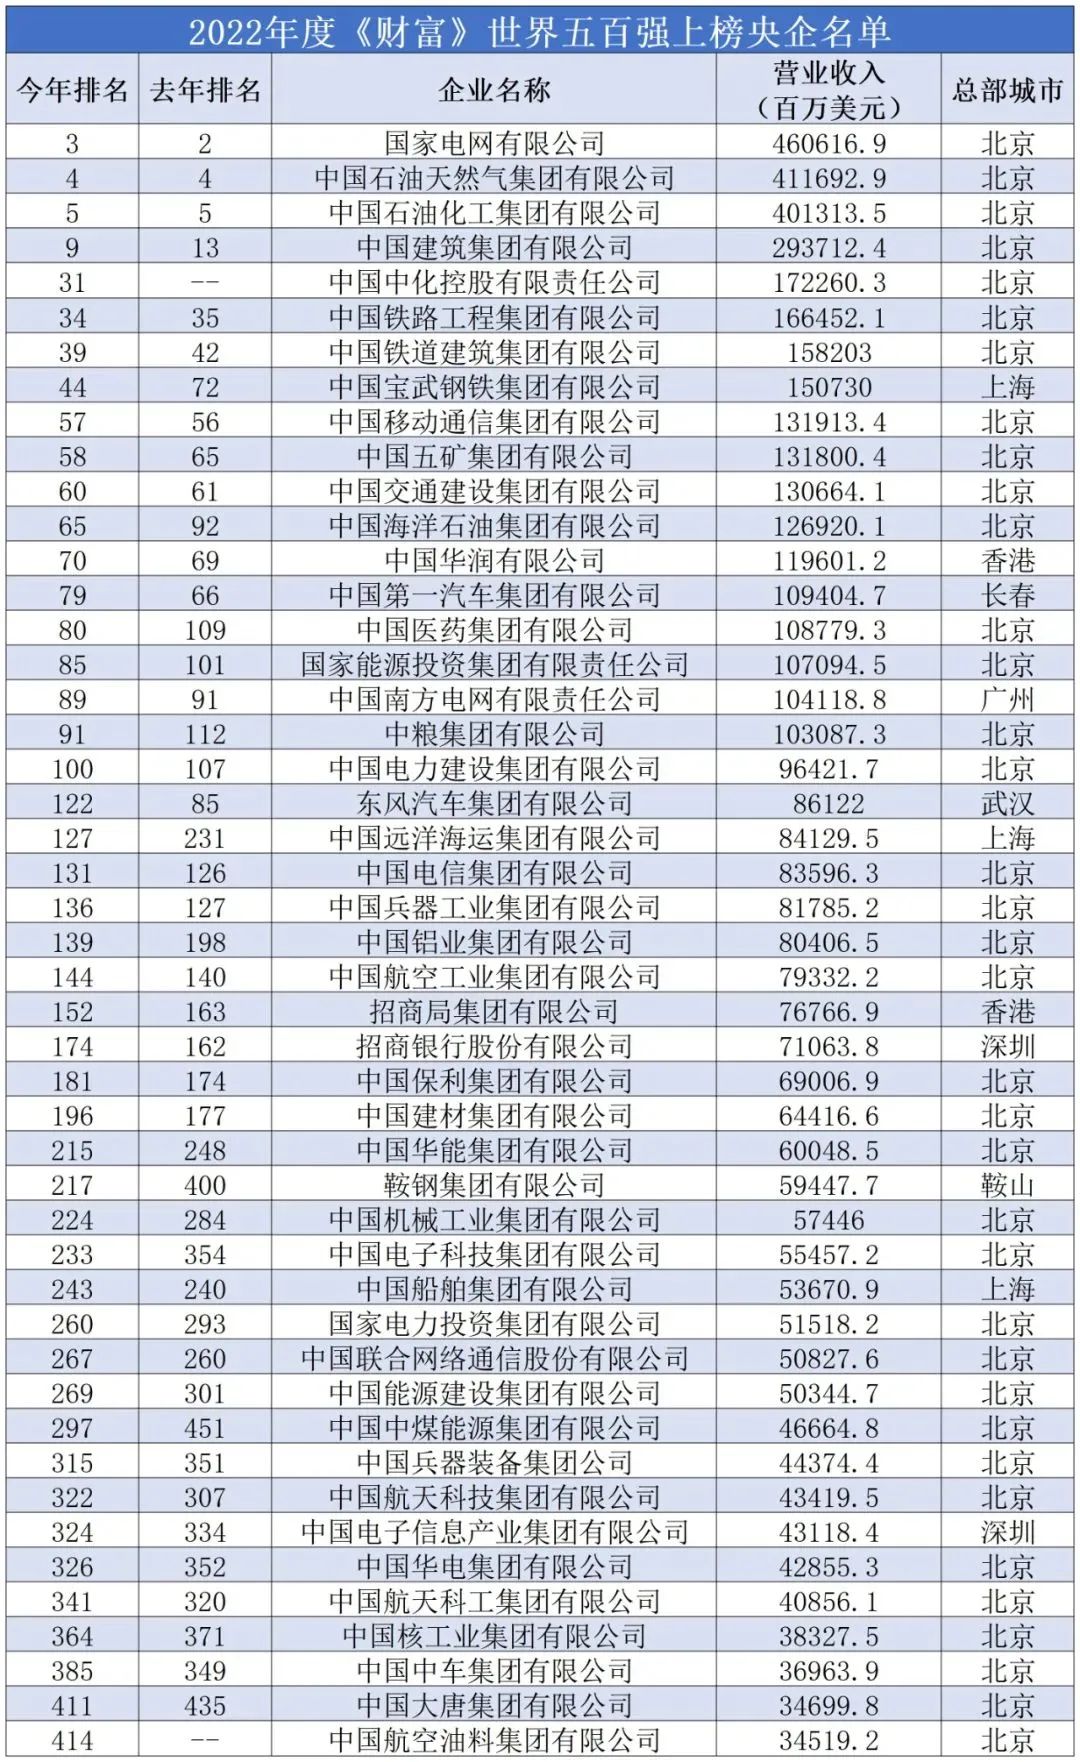 2021第一批“广州最具价值品牌”100强企业名单发布